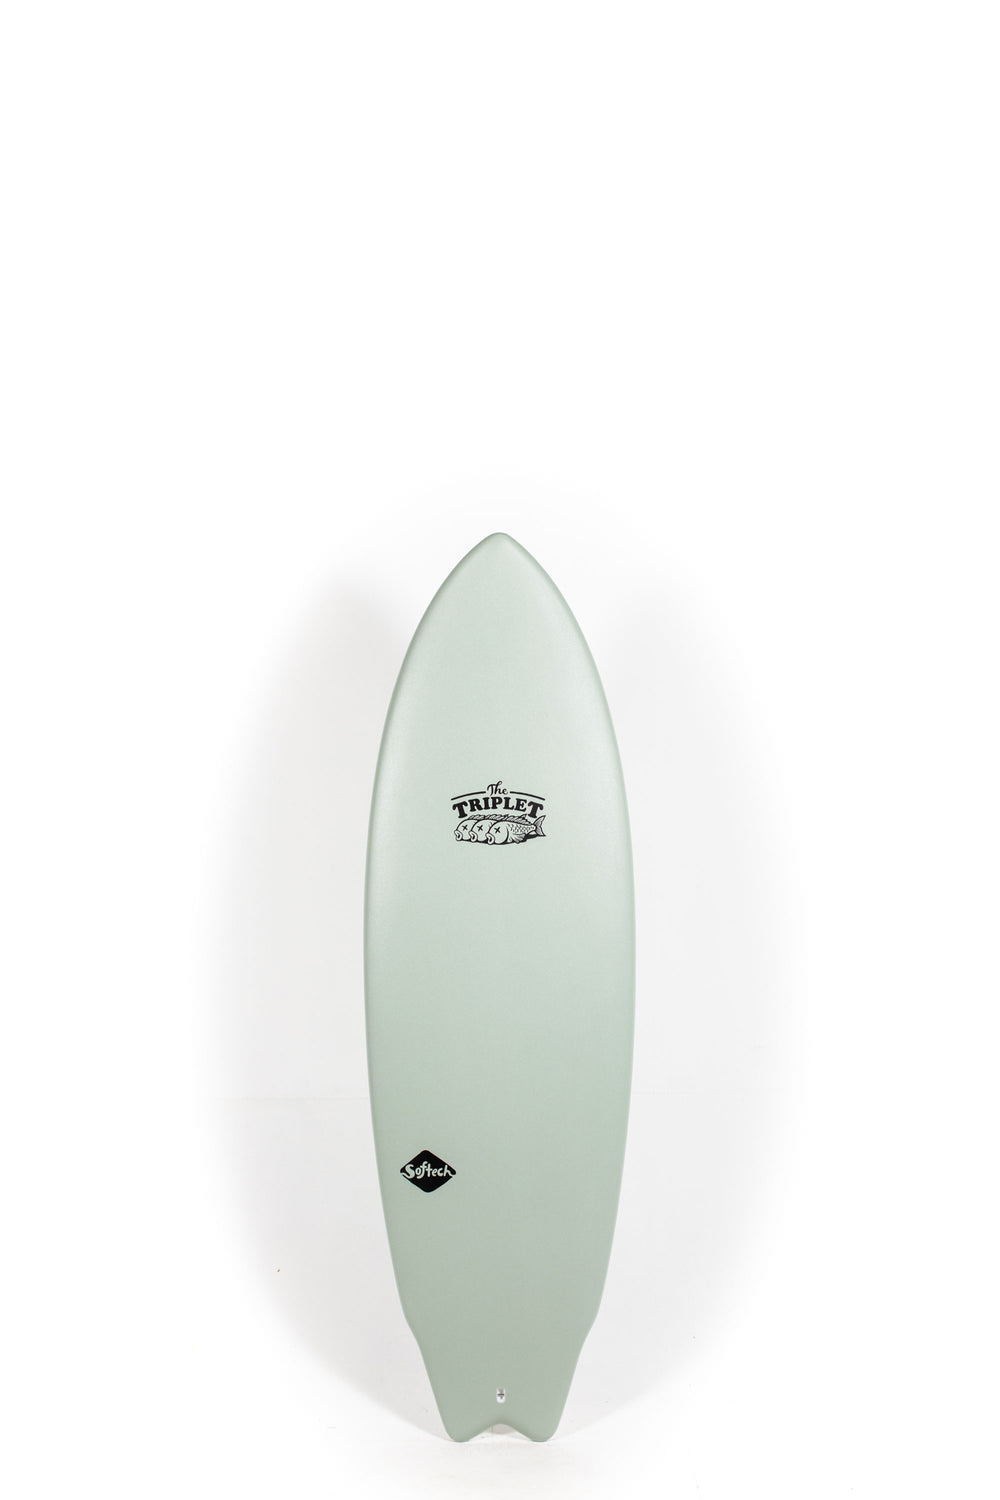 Pukas Surf Shop - SOFTECH - THE TRIPLET 5'8